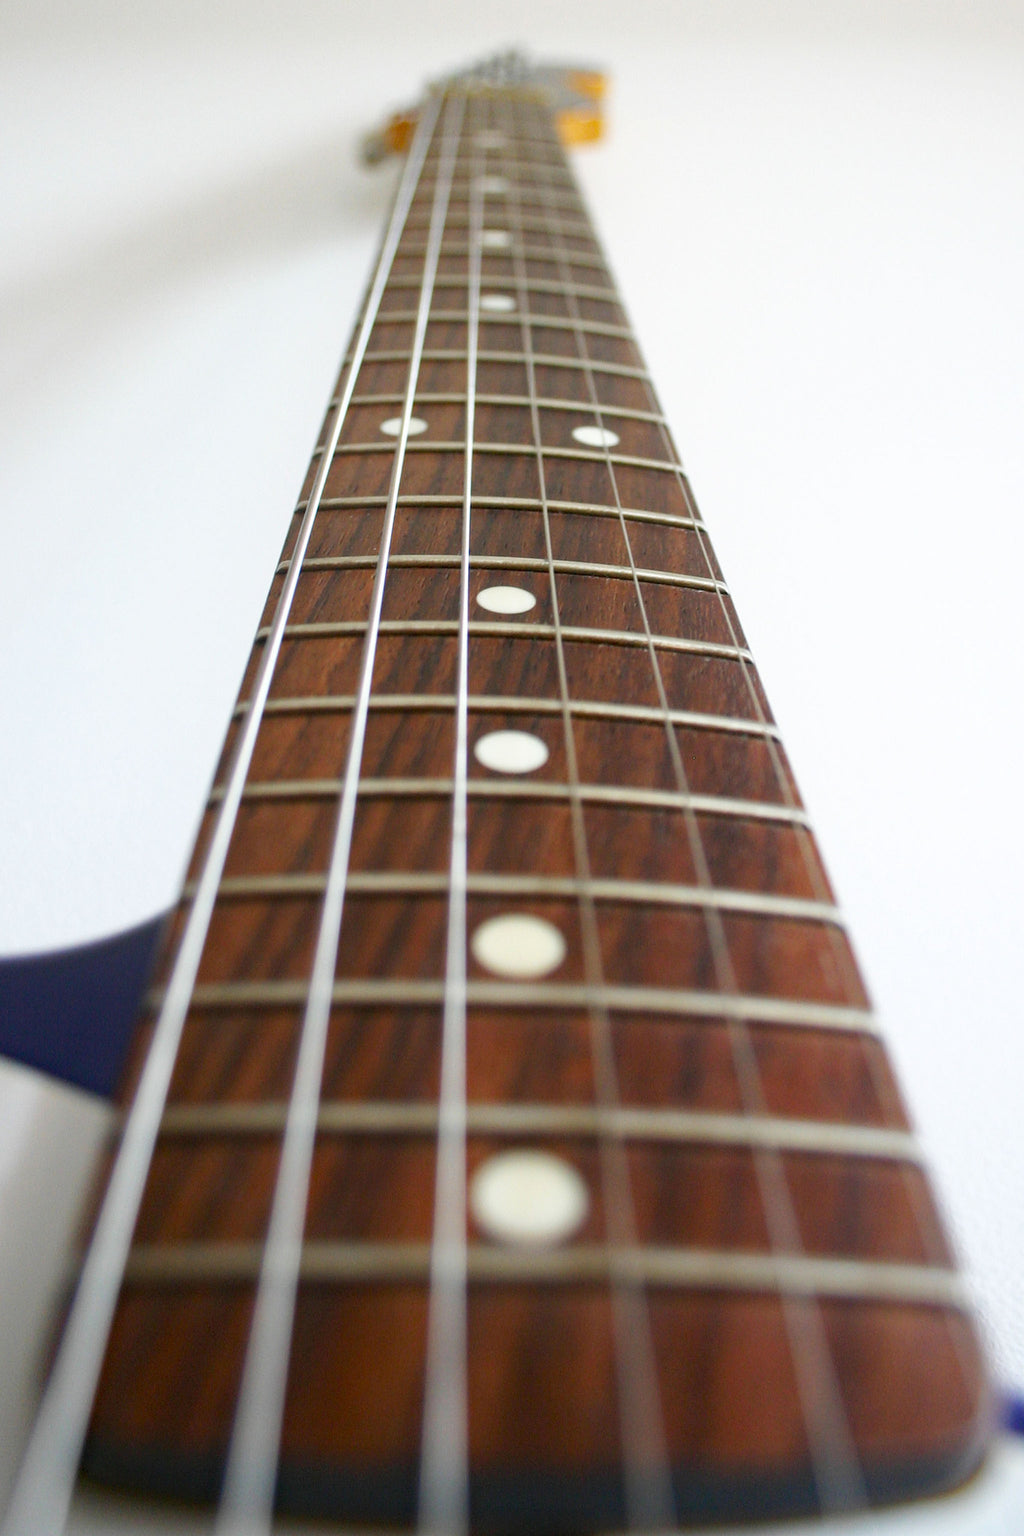 Used Fender Stratocaster '62 Reissue Jupiter Blue